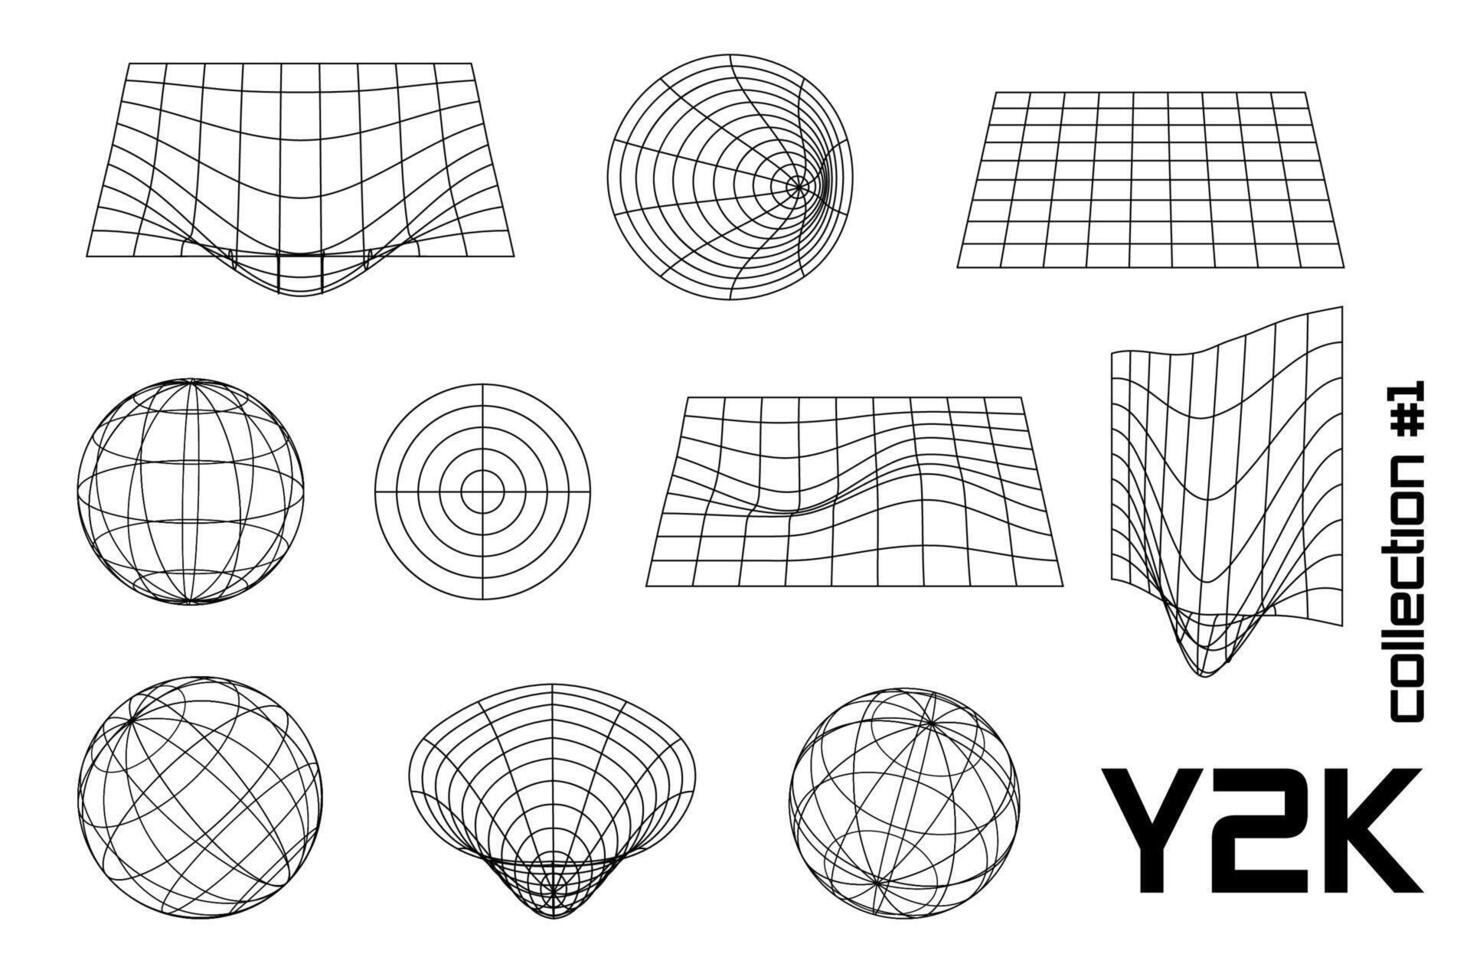 reeks lineair wit en wit meetkundig y2k, 3d, kader, meetkundig vorm geven aan. voor affiches, spandoeken. vector